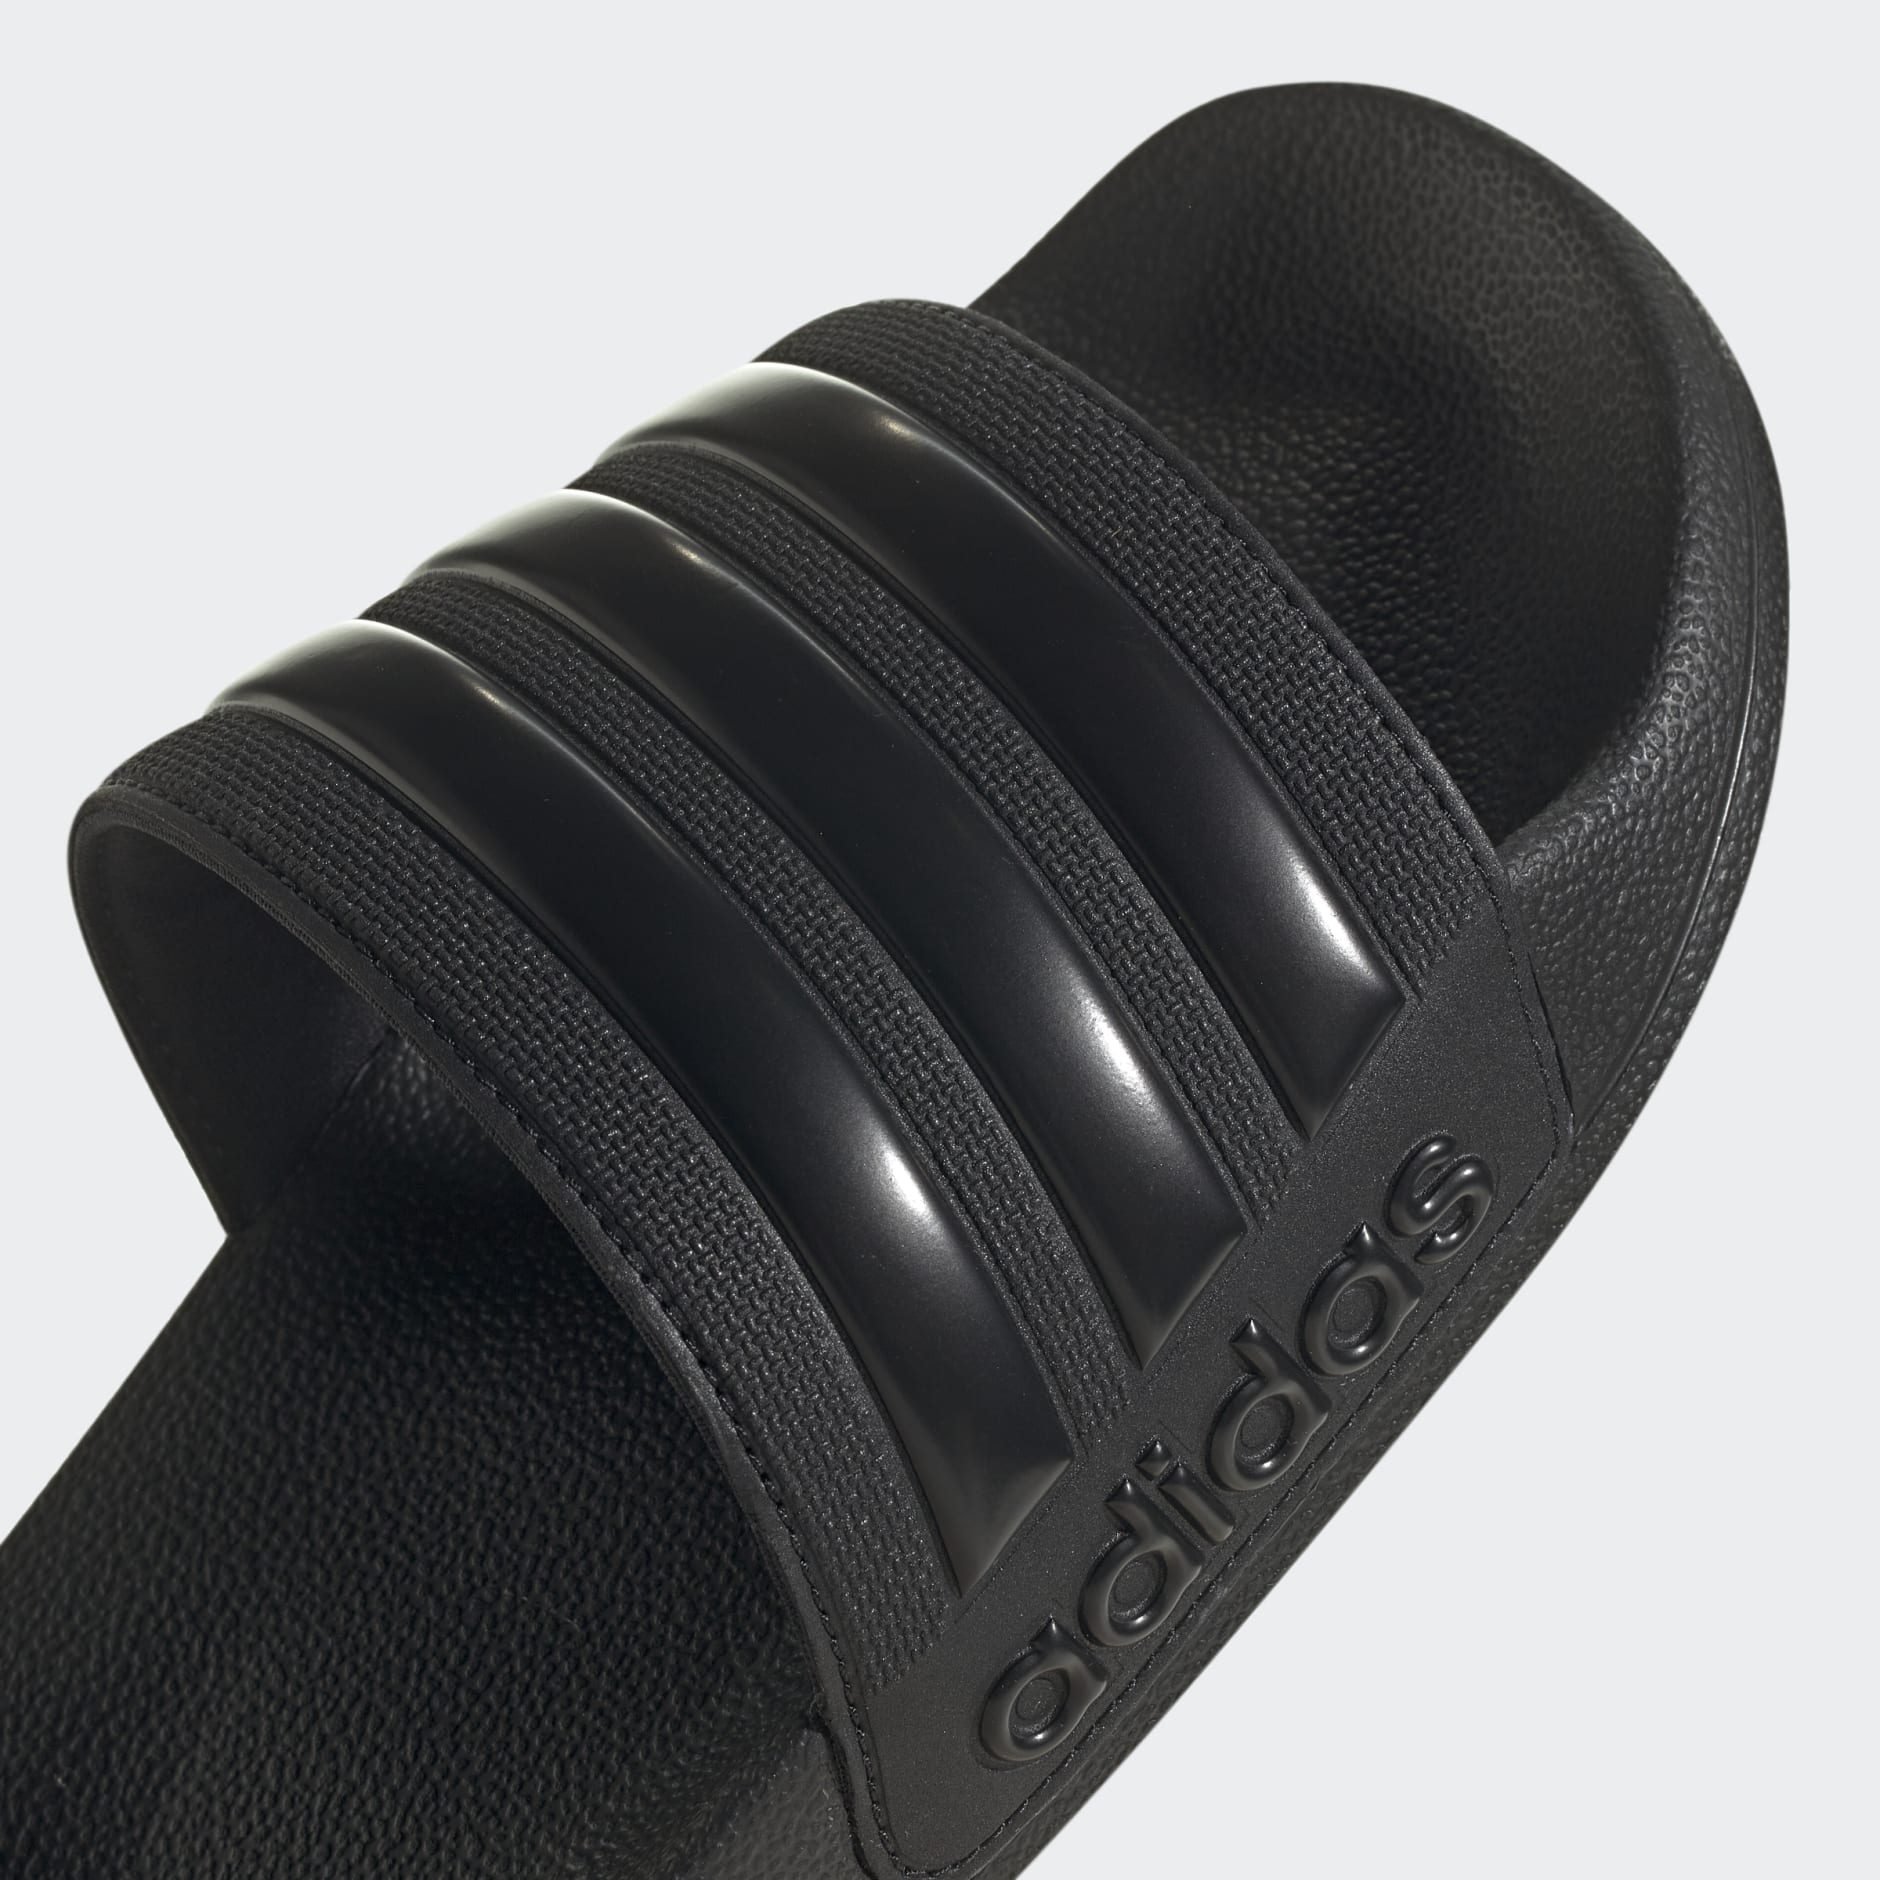 adidas Adilette Shower Slides - Black | adidas UAE